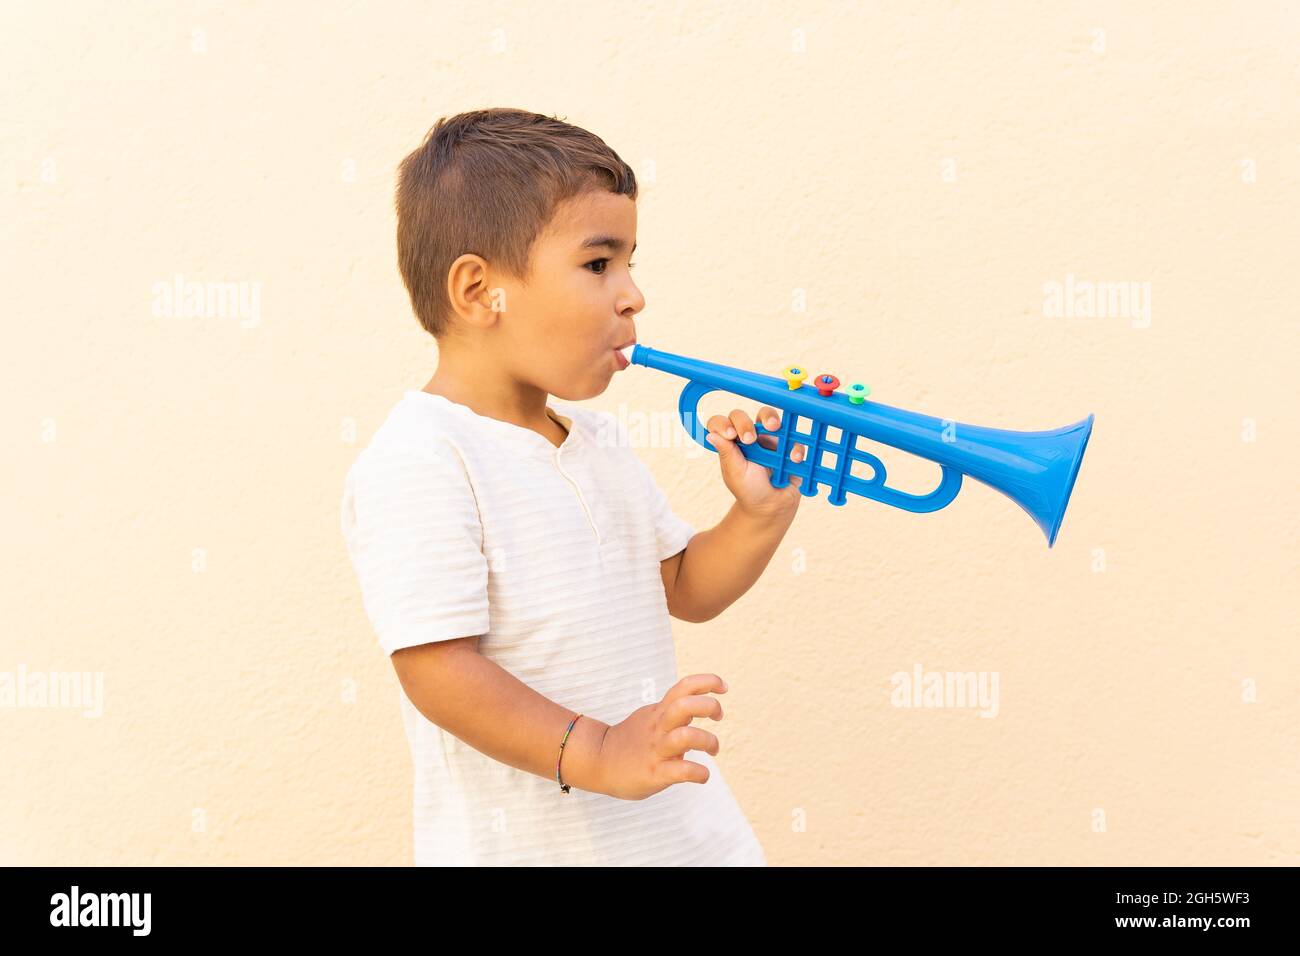 Vue latérale d'un petit garçon mignon jouant de la trompette bleue jouée  près du mur orange clair Photo Stock - Alamy